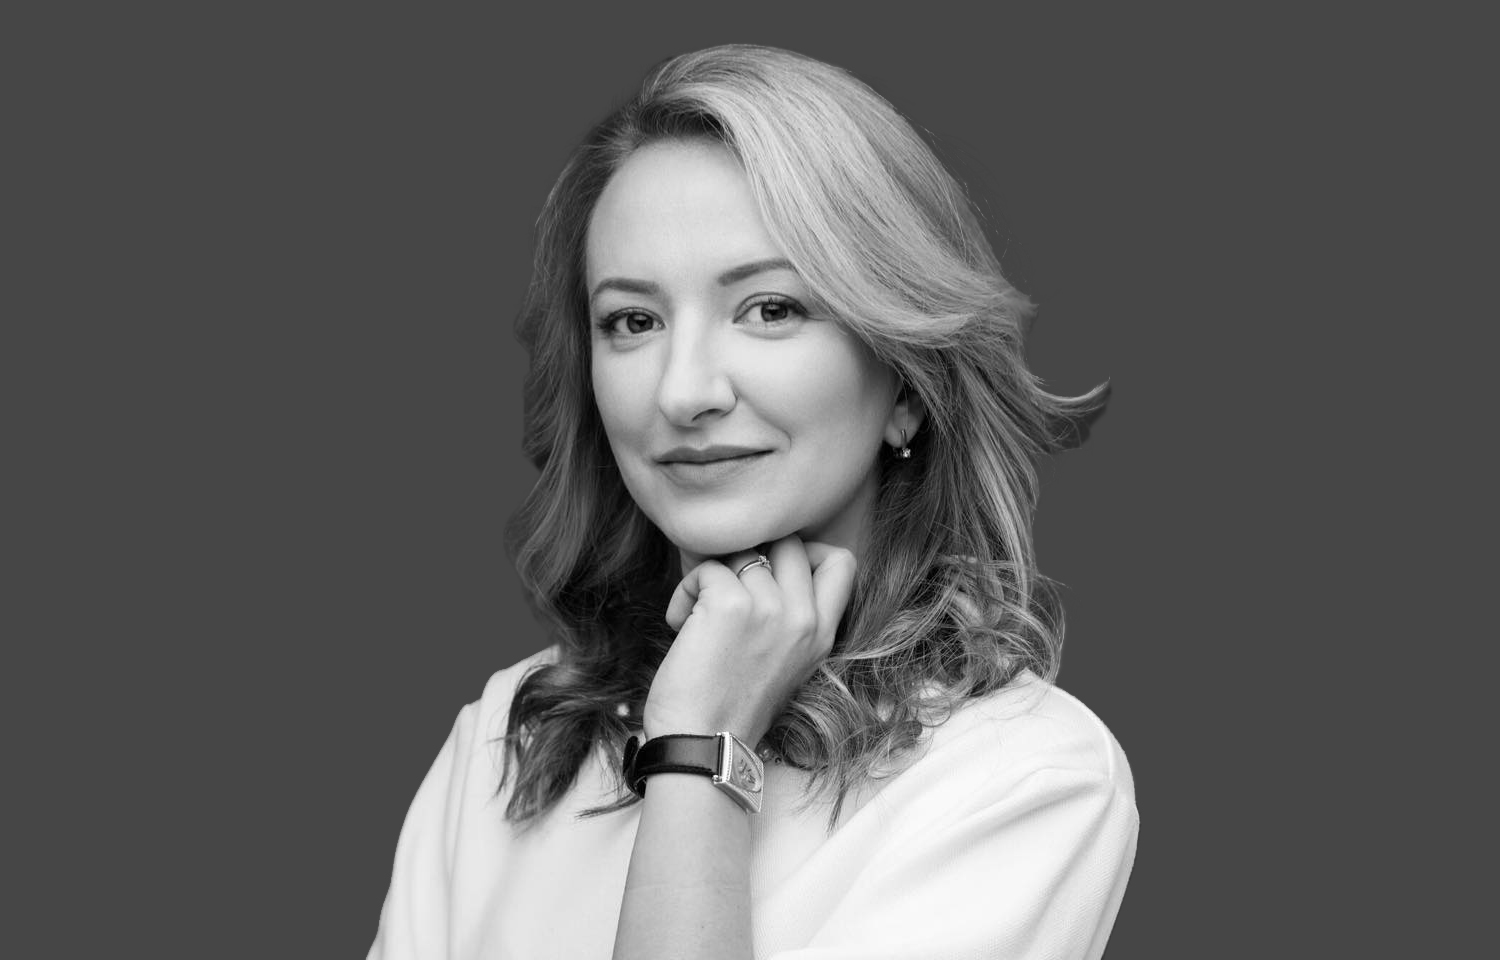 ДАВОС-2023: Наталья Морозова, CEO агентства Havas Village Ukraine, делится своими впечатлениями о ВЭФ в Давосе